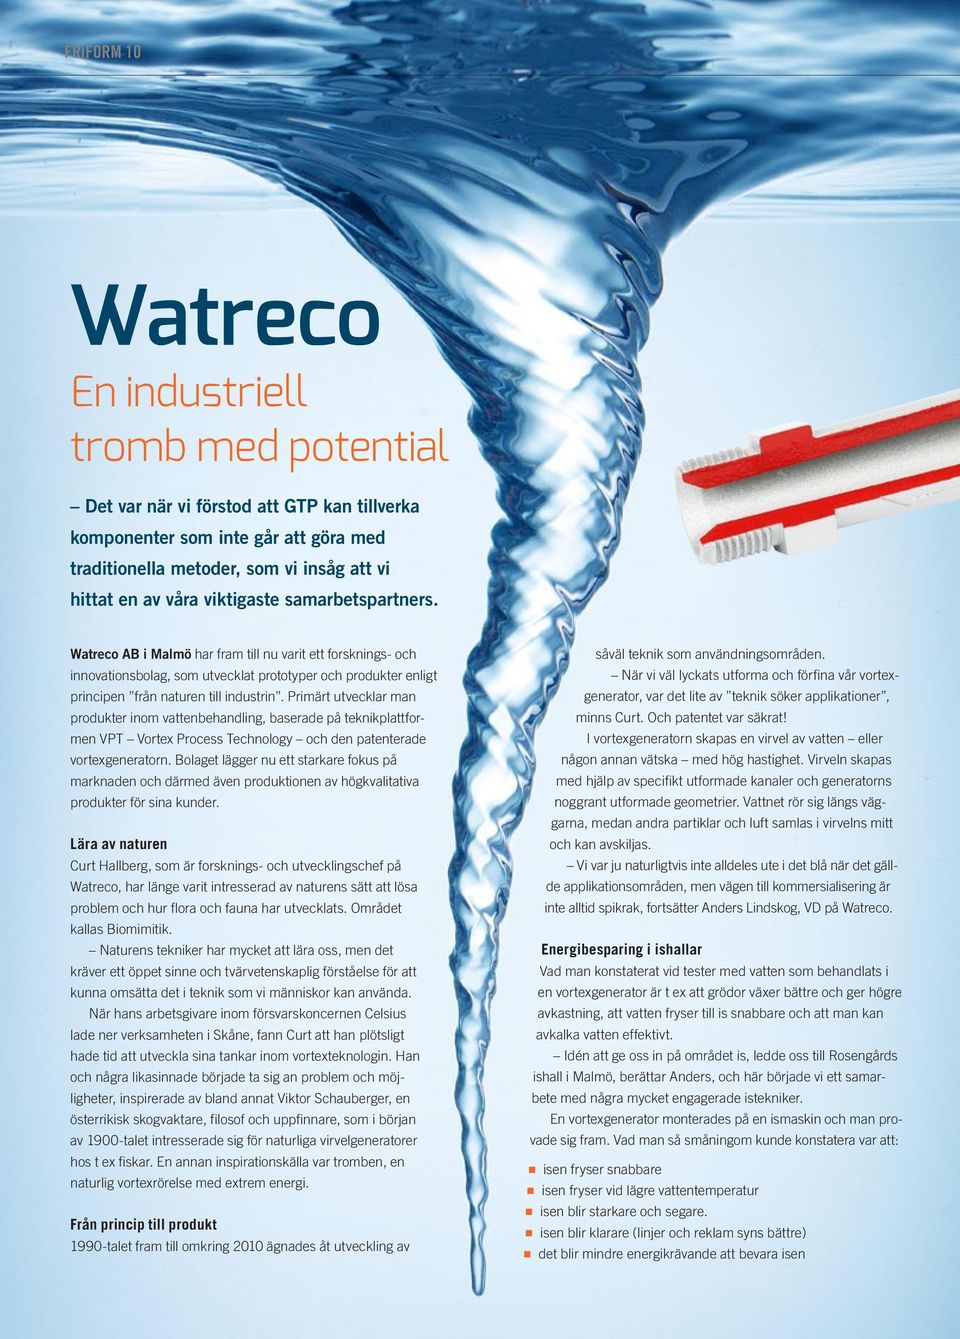 Primärt utvecklar man produkter inom vattenbehandling, baserade på teknikplattformen VPT Vortex Process Technology och den patenterade vortexgeneratorn.